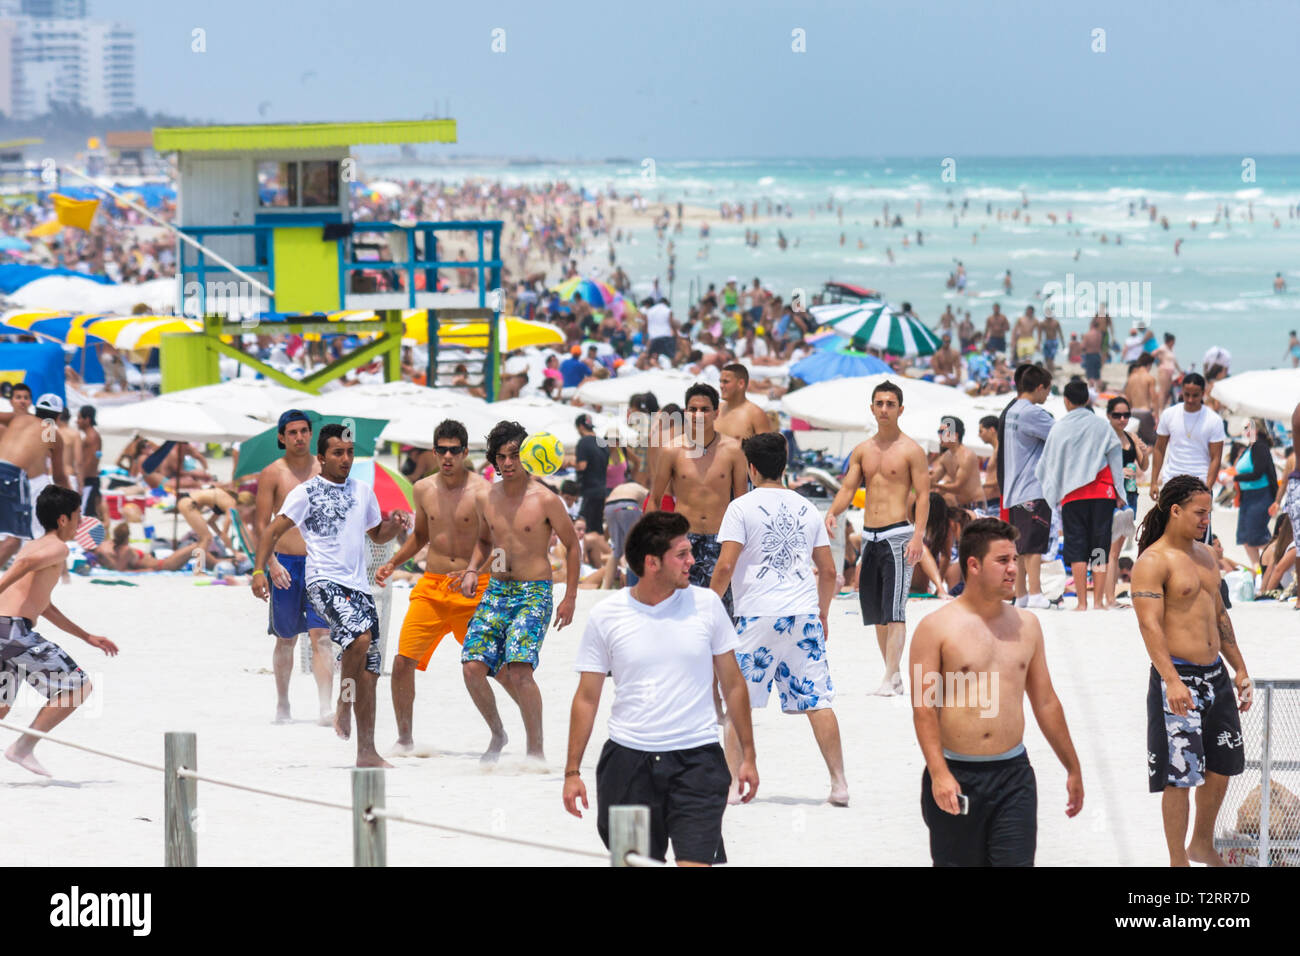 Miami Beach Florida, Atlantik, Wasser, Ufer, Frühlingsferien, Männer, junge Erwachsene, Badeanzüge, überfüllt, Surfen, Studenten Fußballspiel, spielen, Rettungsschwimmer st Stockfoto